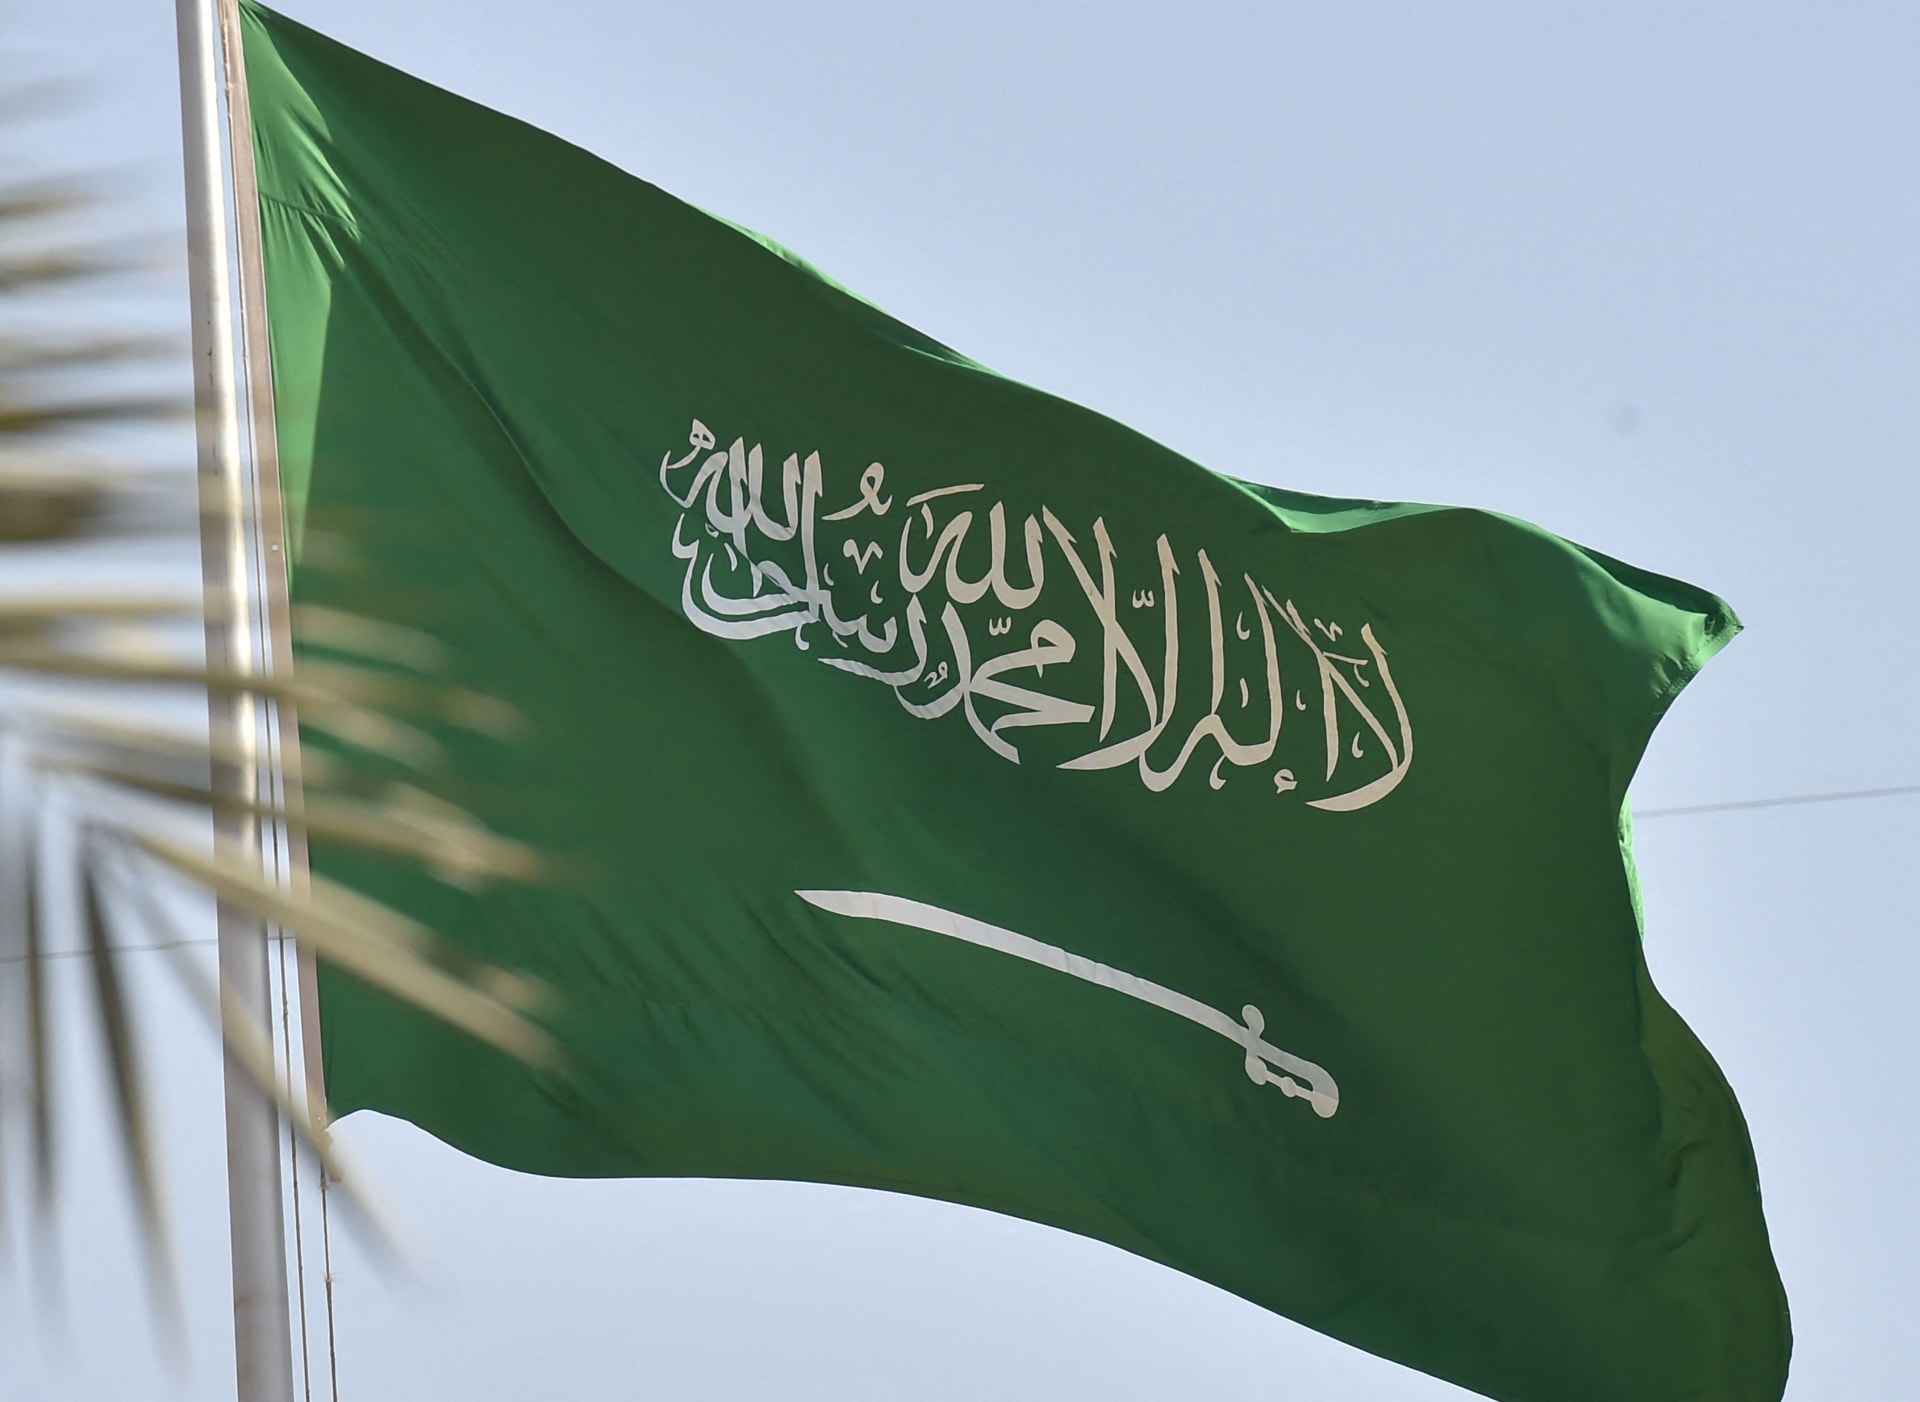 بعد تصريح المغامسي.. هيئة كبار العلماء السعودية: الدعوة إلى إنشاء مذهب فقهي جديد تفتقد الموضوعية